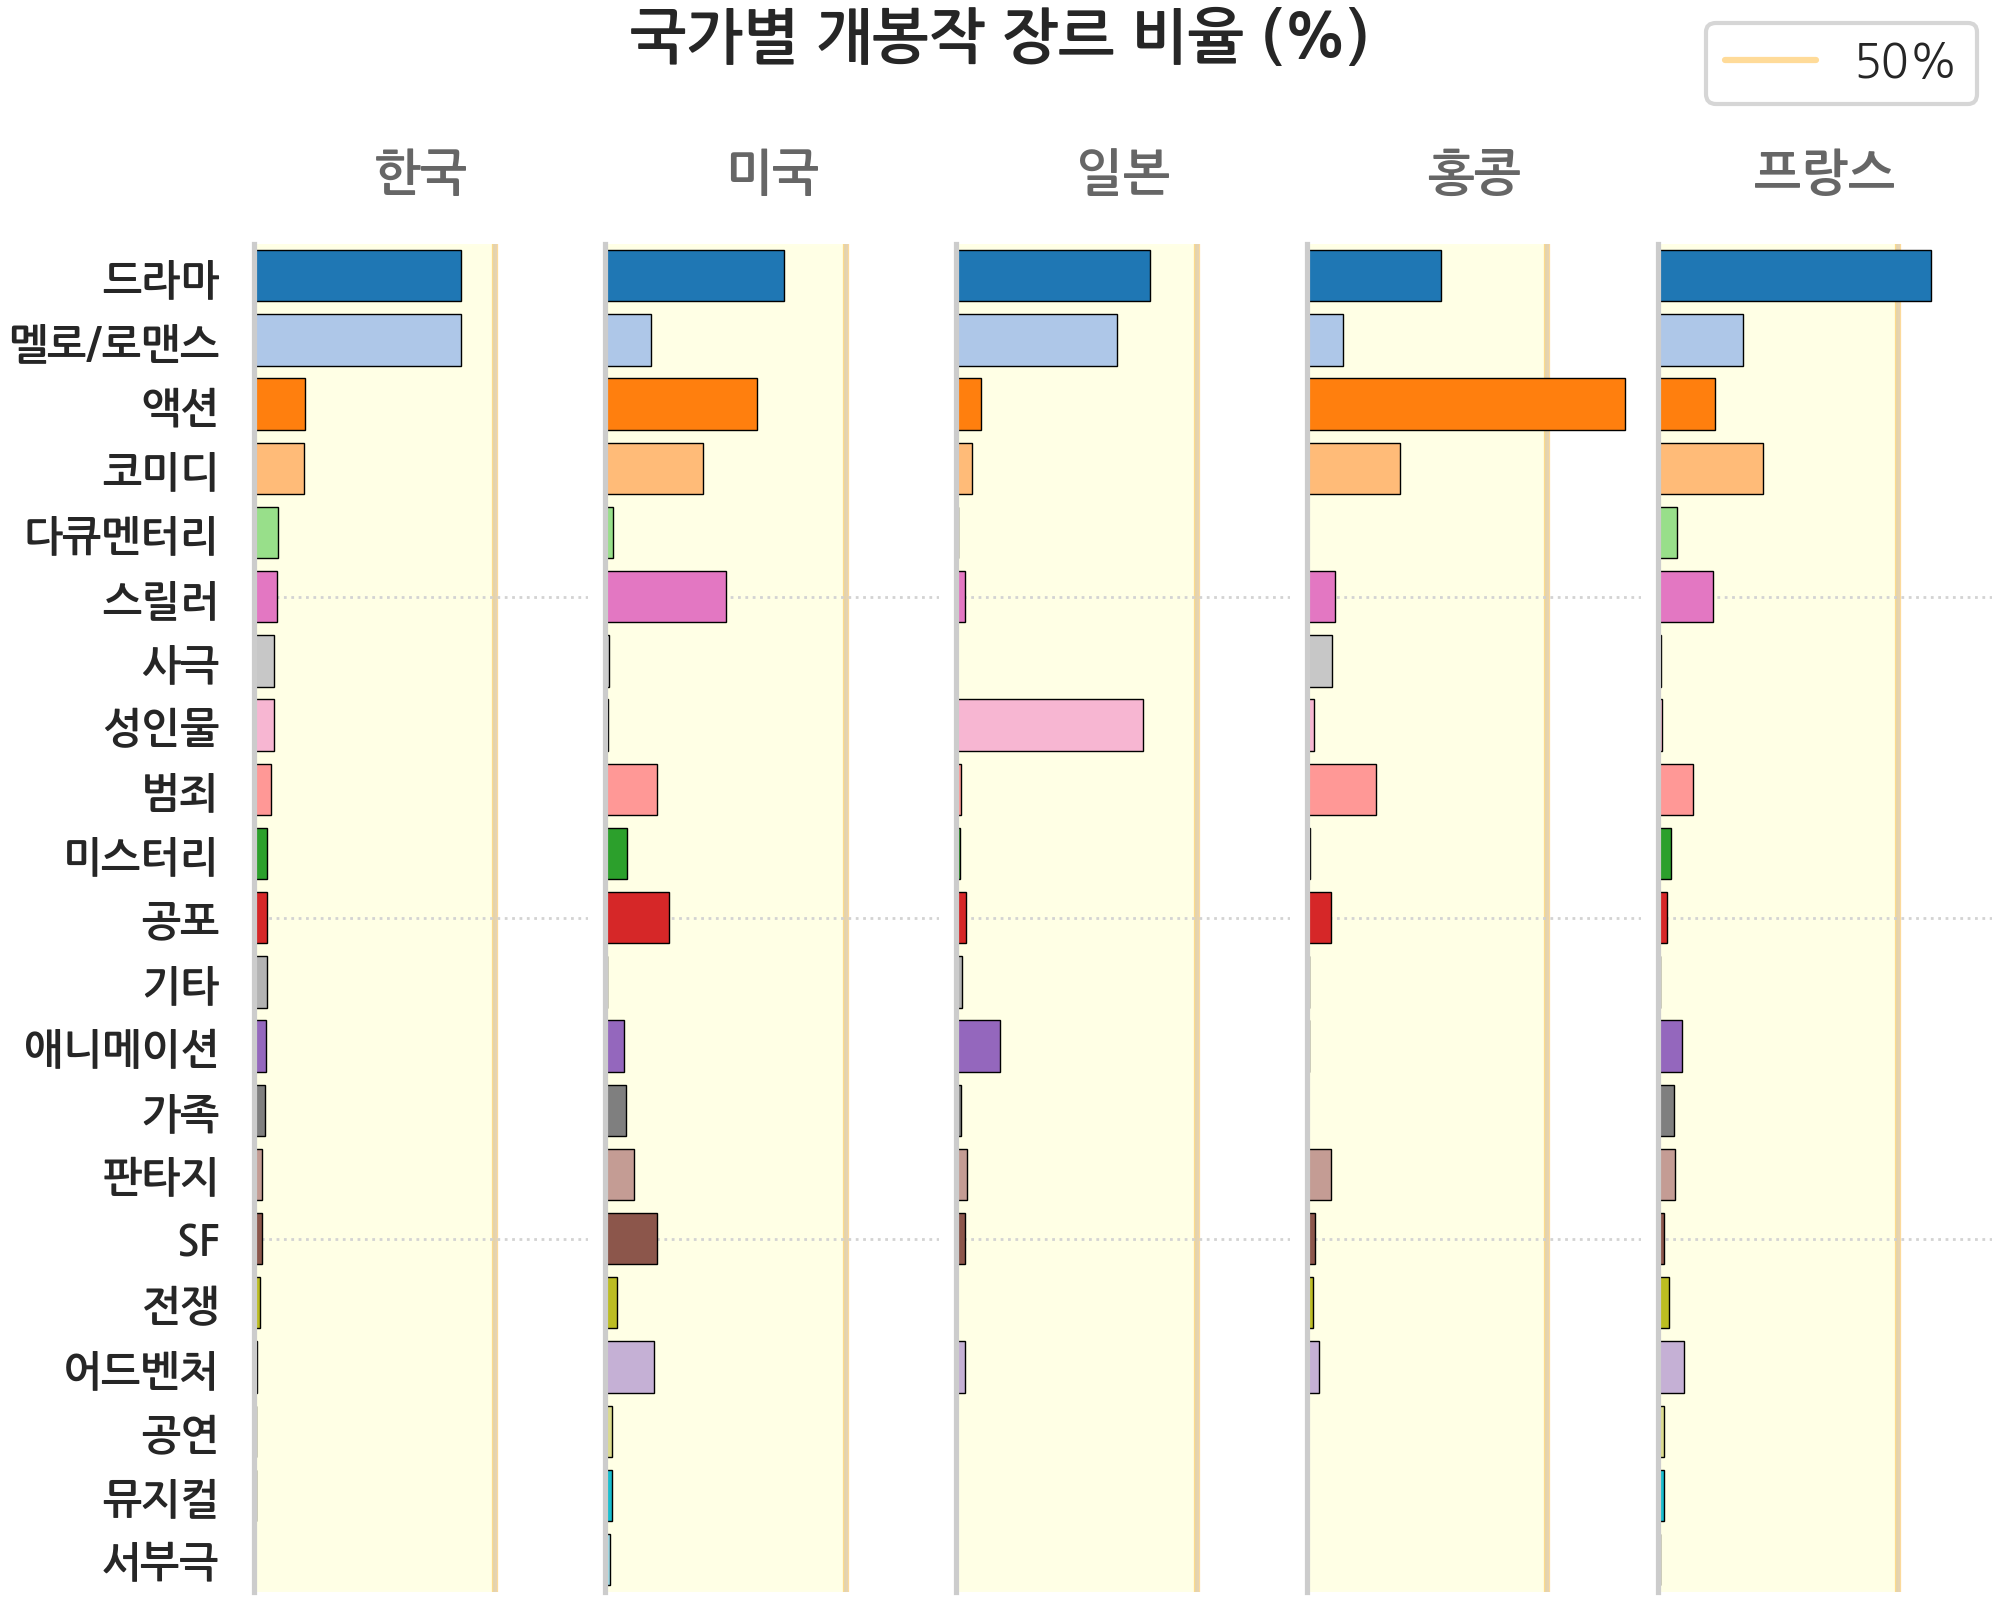 한국영화와 해외영화 장르별로 년도에 따른 비중을 나타낸 이미지, 하단 내용 참조